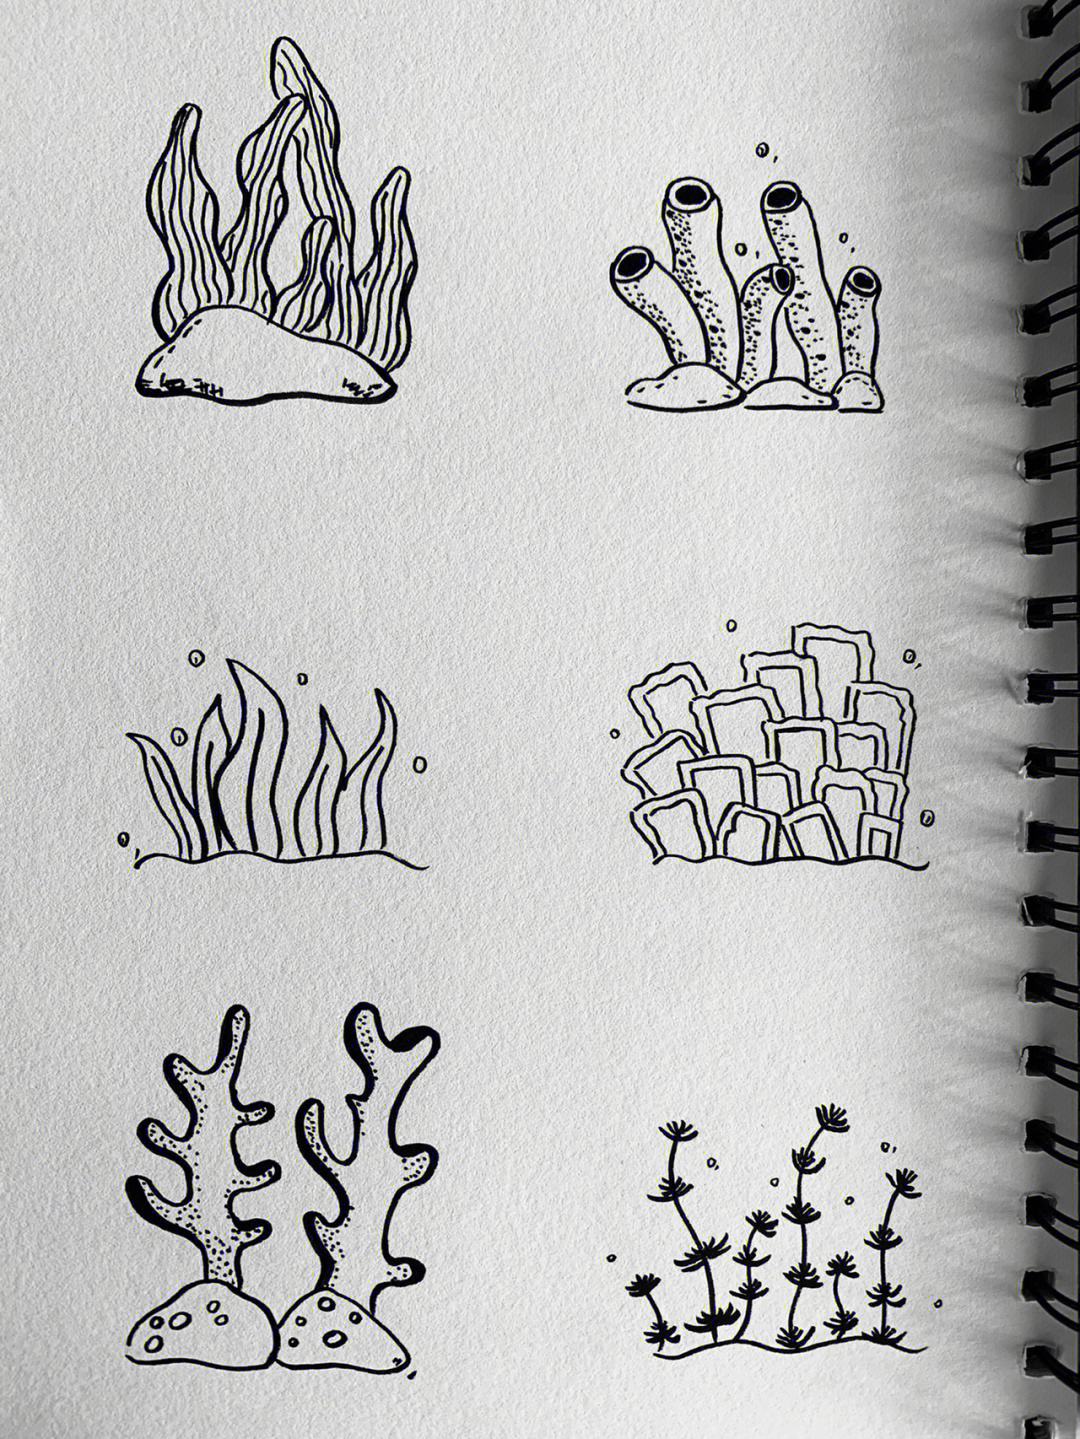 海洋简笔画植物图片